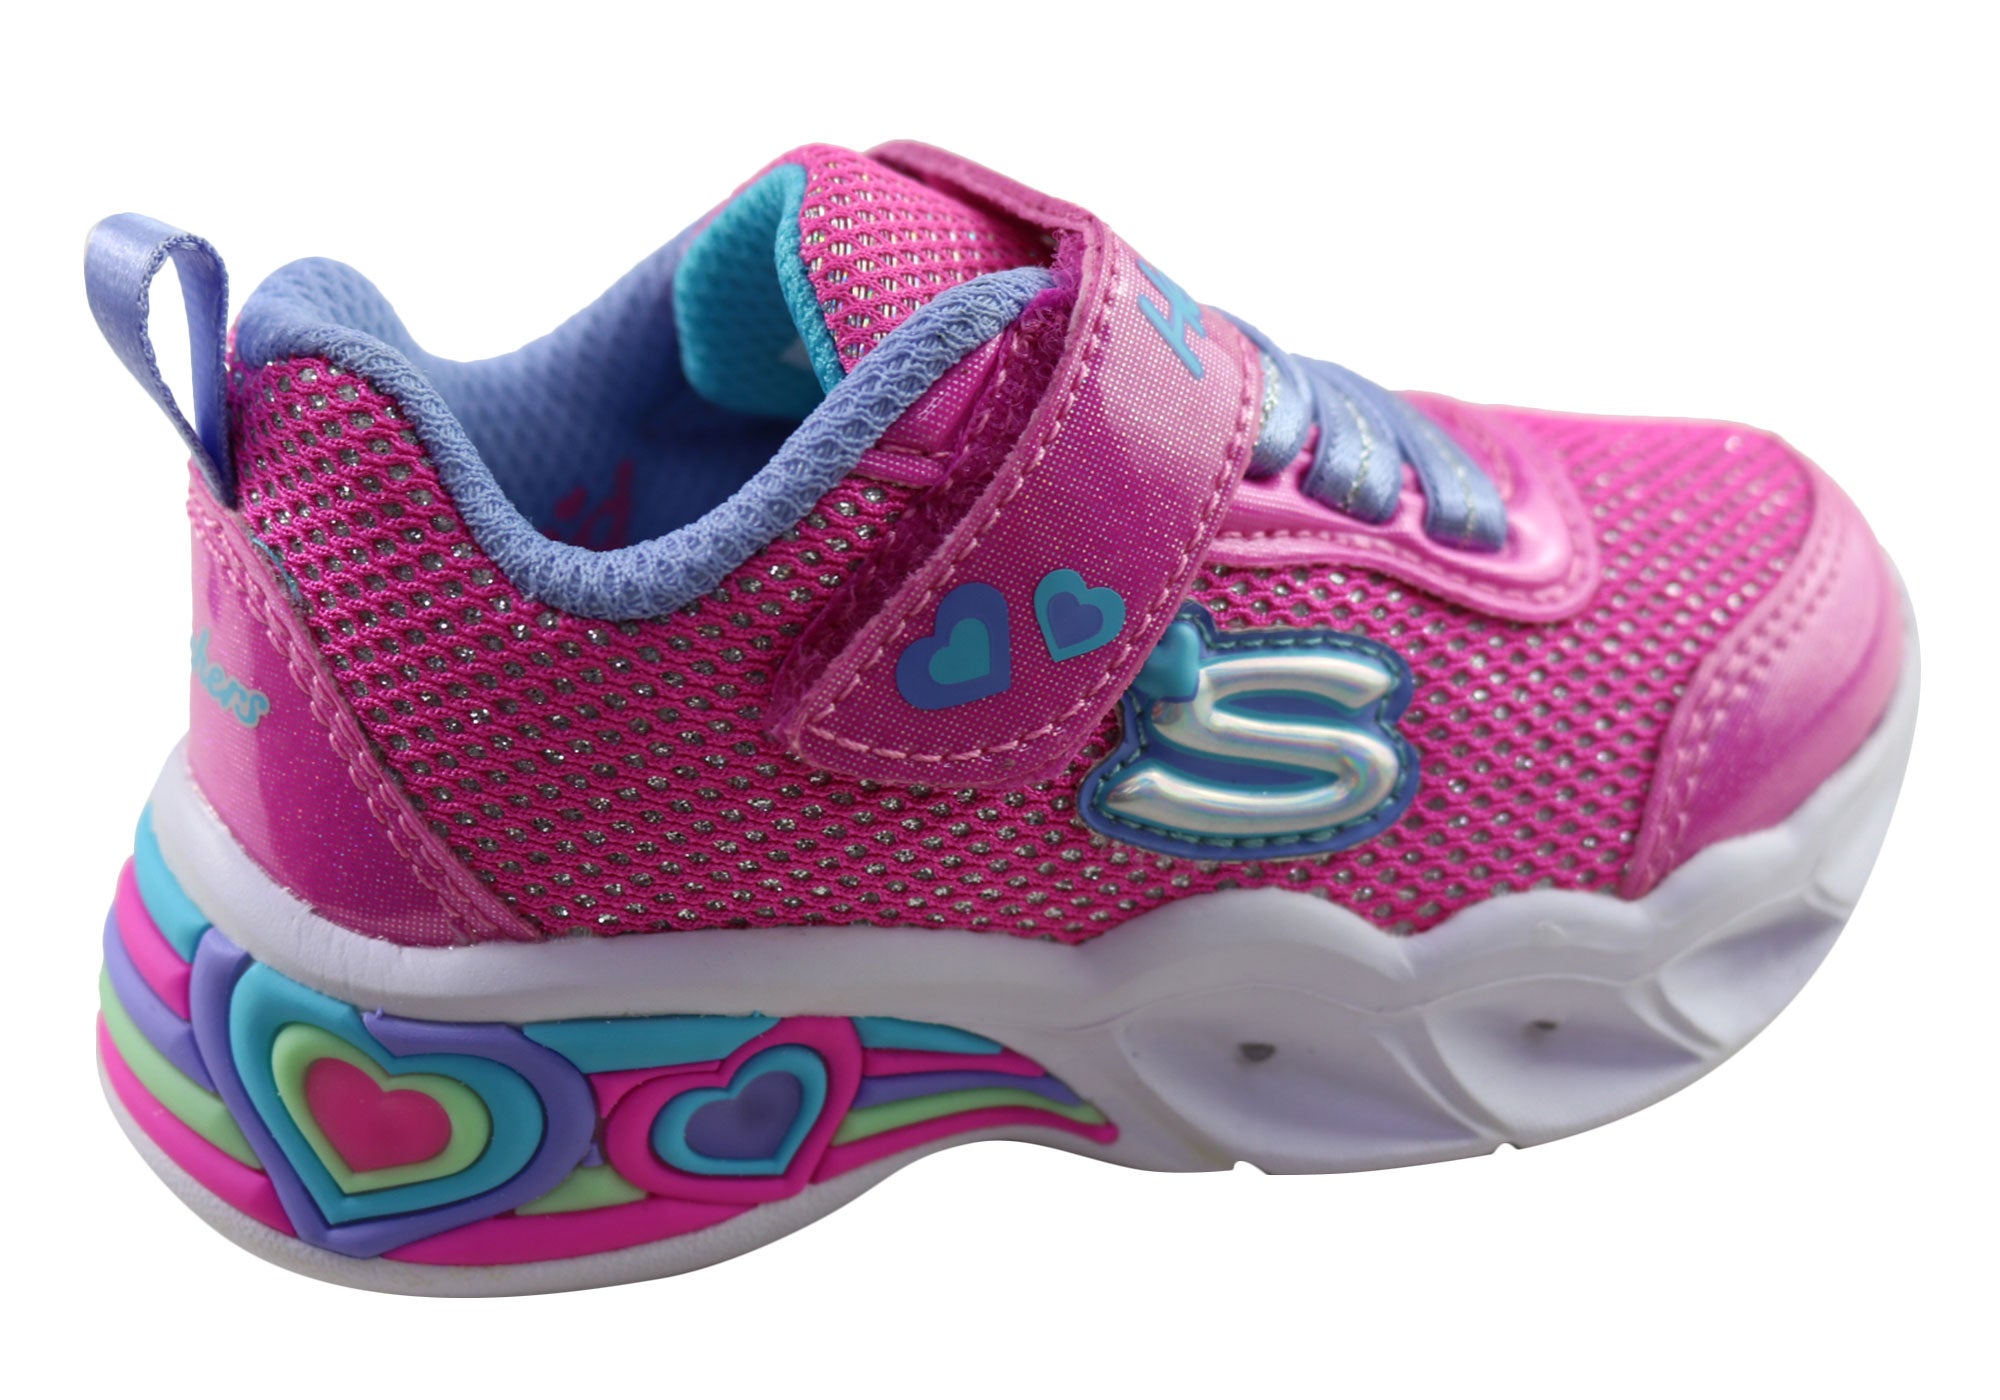 Efterforskning De er Anklage Skechers Infant Toddler Girls S Lights Sweetheart Shimmer Spells Shoes –  Brand House Direct